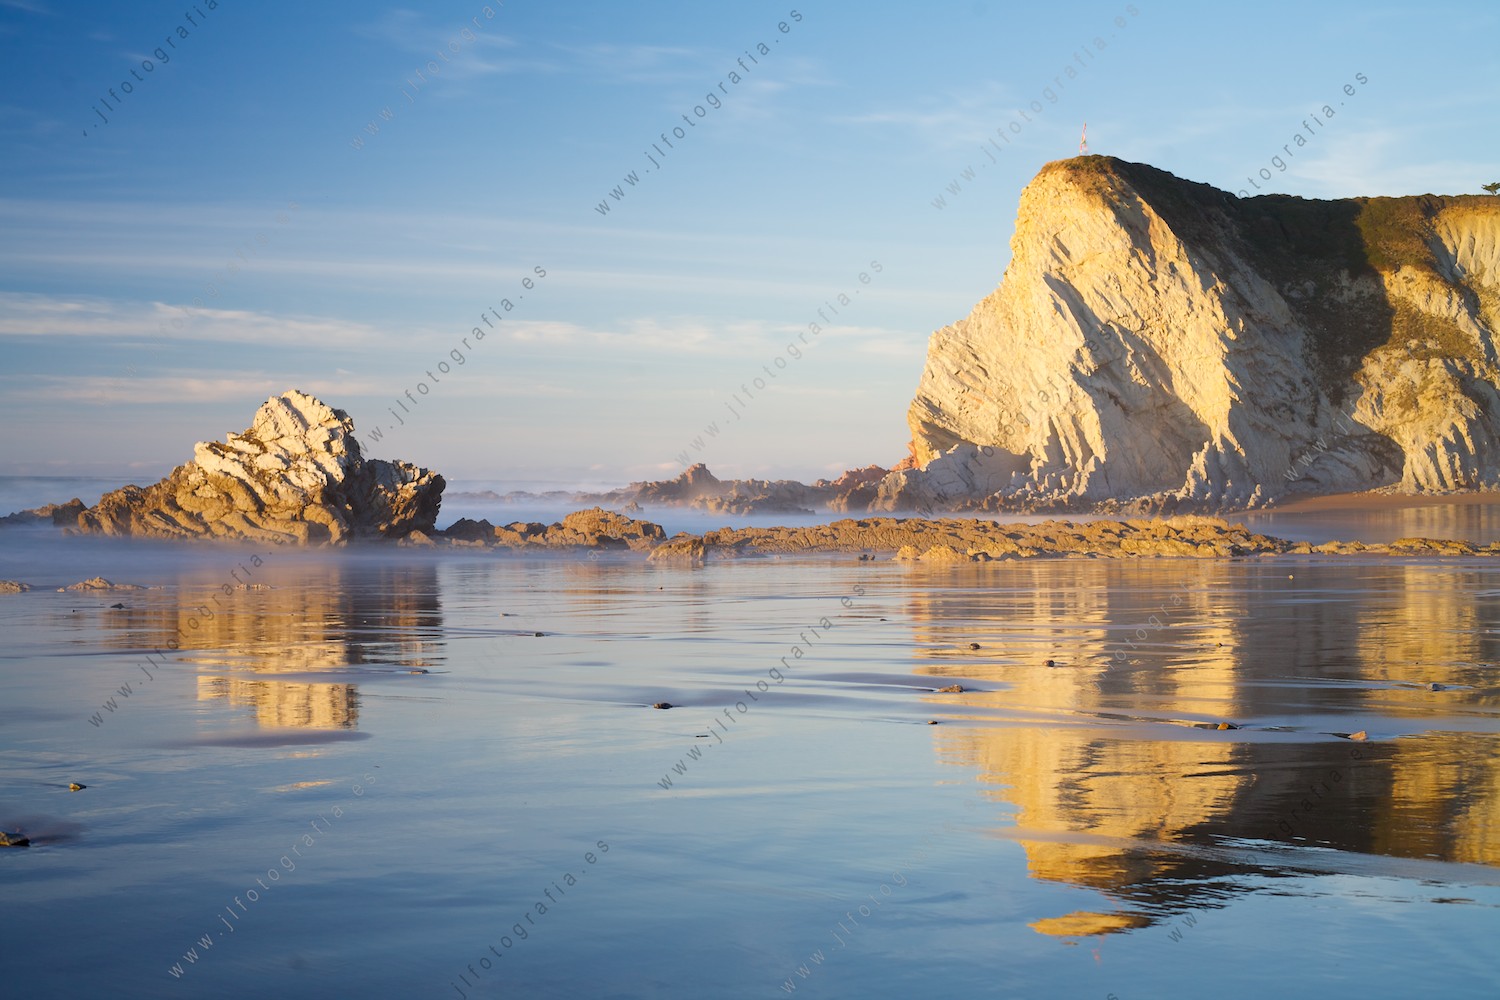 Las rocas del acantilado de la costa vasca, dibujadas en el suelo espejado por el agua del mar